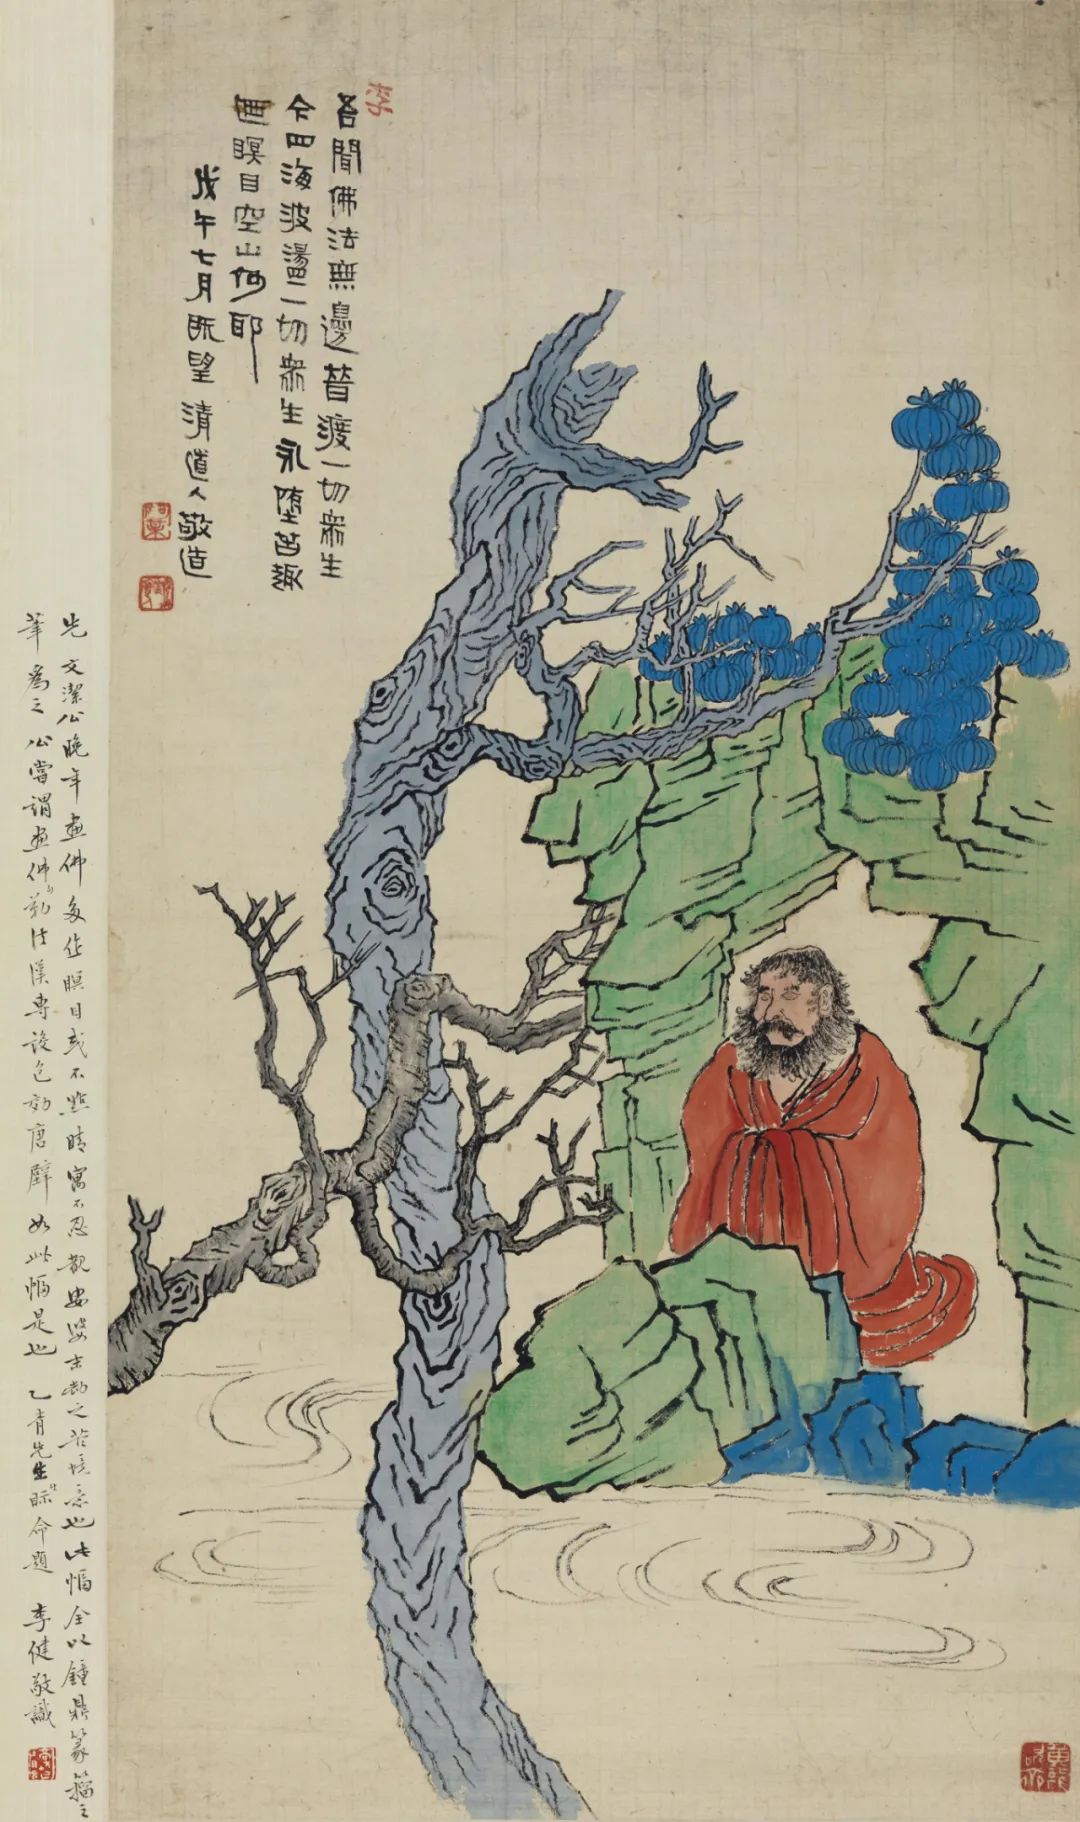 李瑞清 佛像 98.7x51.4cm  中国画 1918年 中国美术馆藏